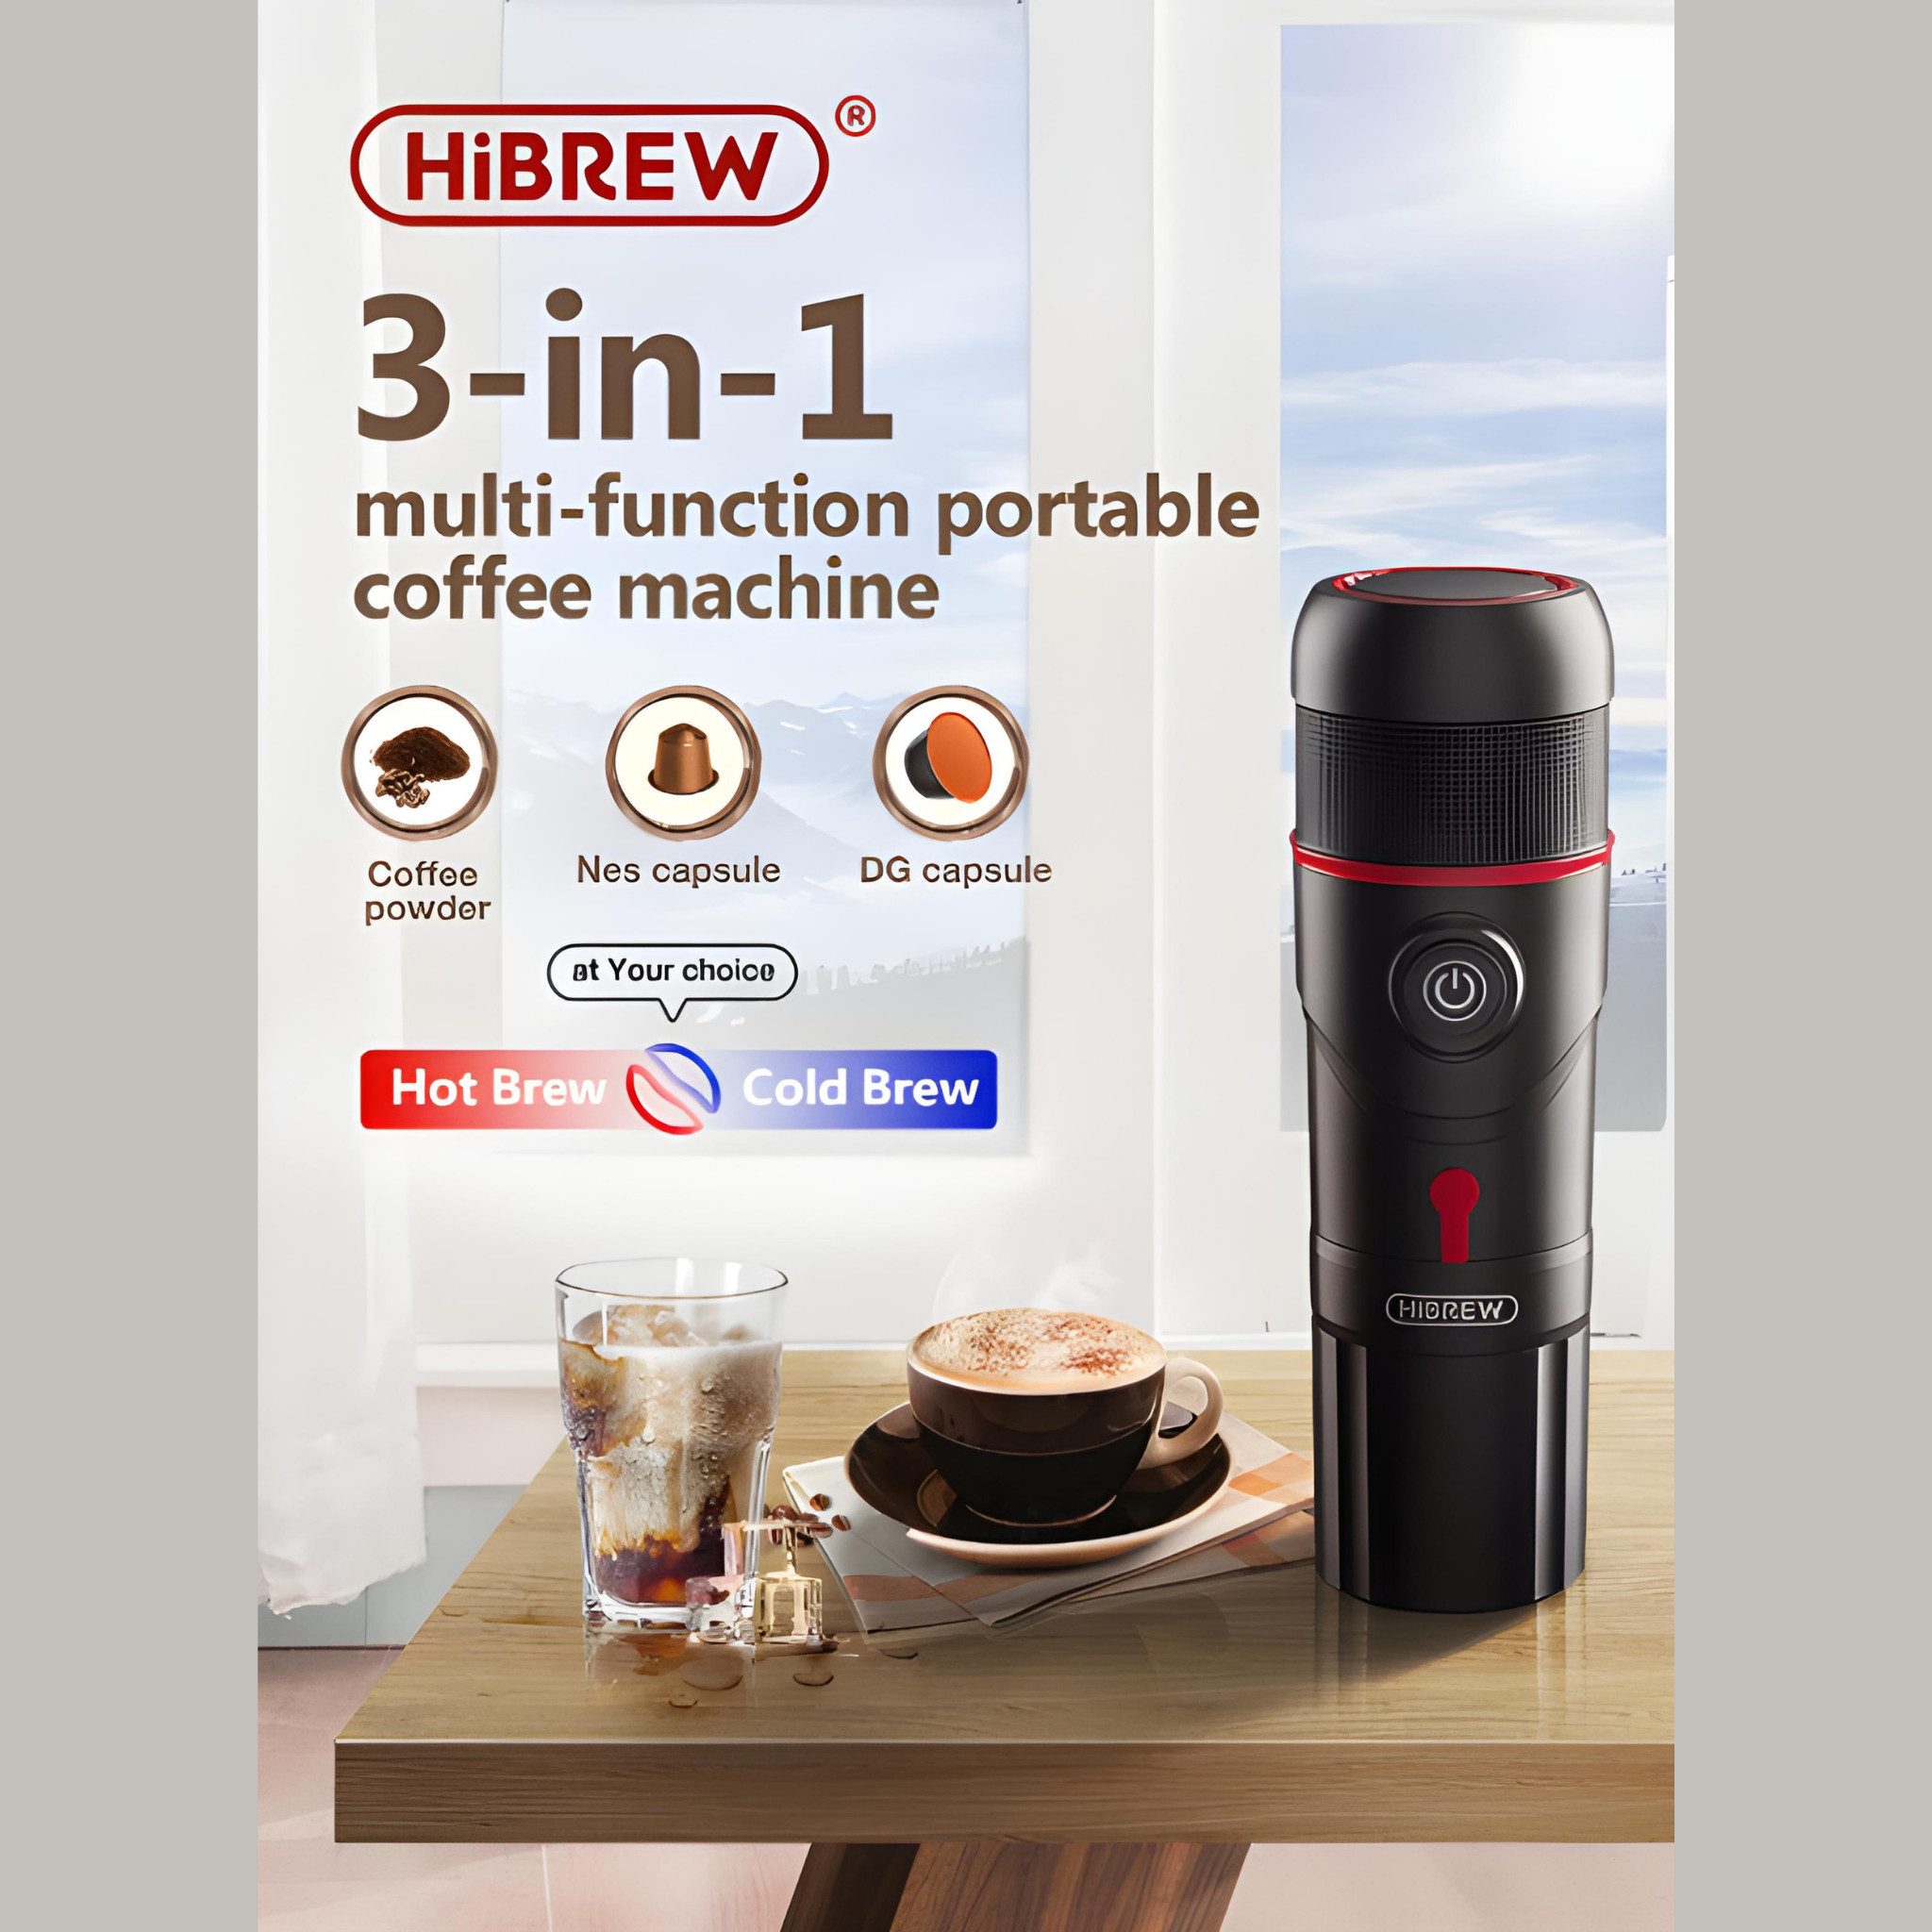 HiBREW Reisekaffeemaschine Reisekaffeemaschine Auto Espressomaschine Auto Kaffeemaschine, integrierte Kaffeetasse, inkl. viel Zubehör, Auch Eiskaffee geeignet